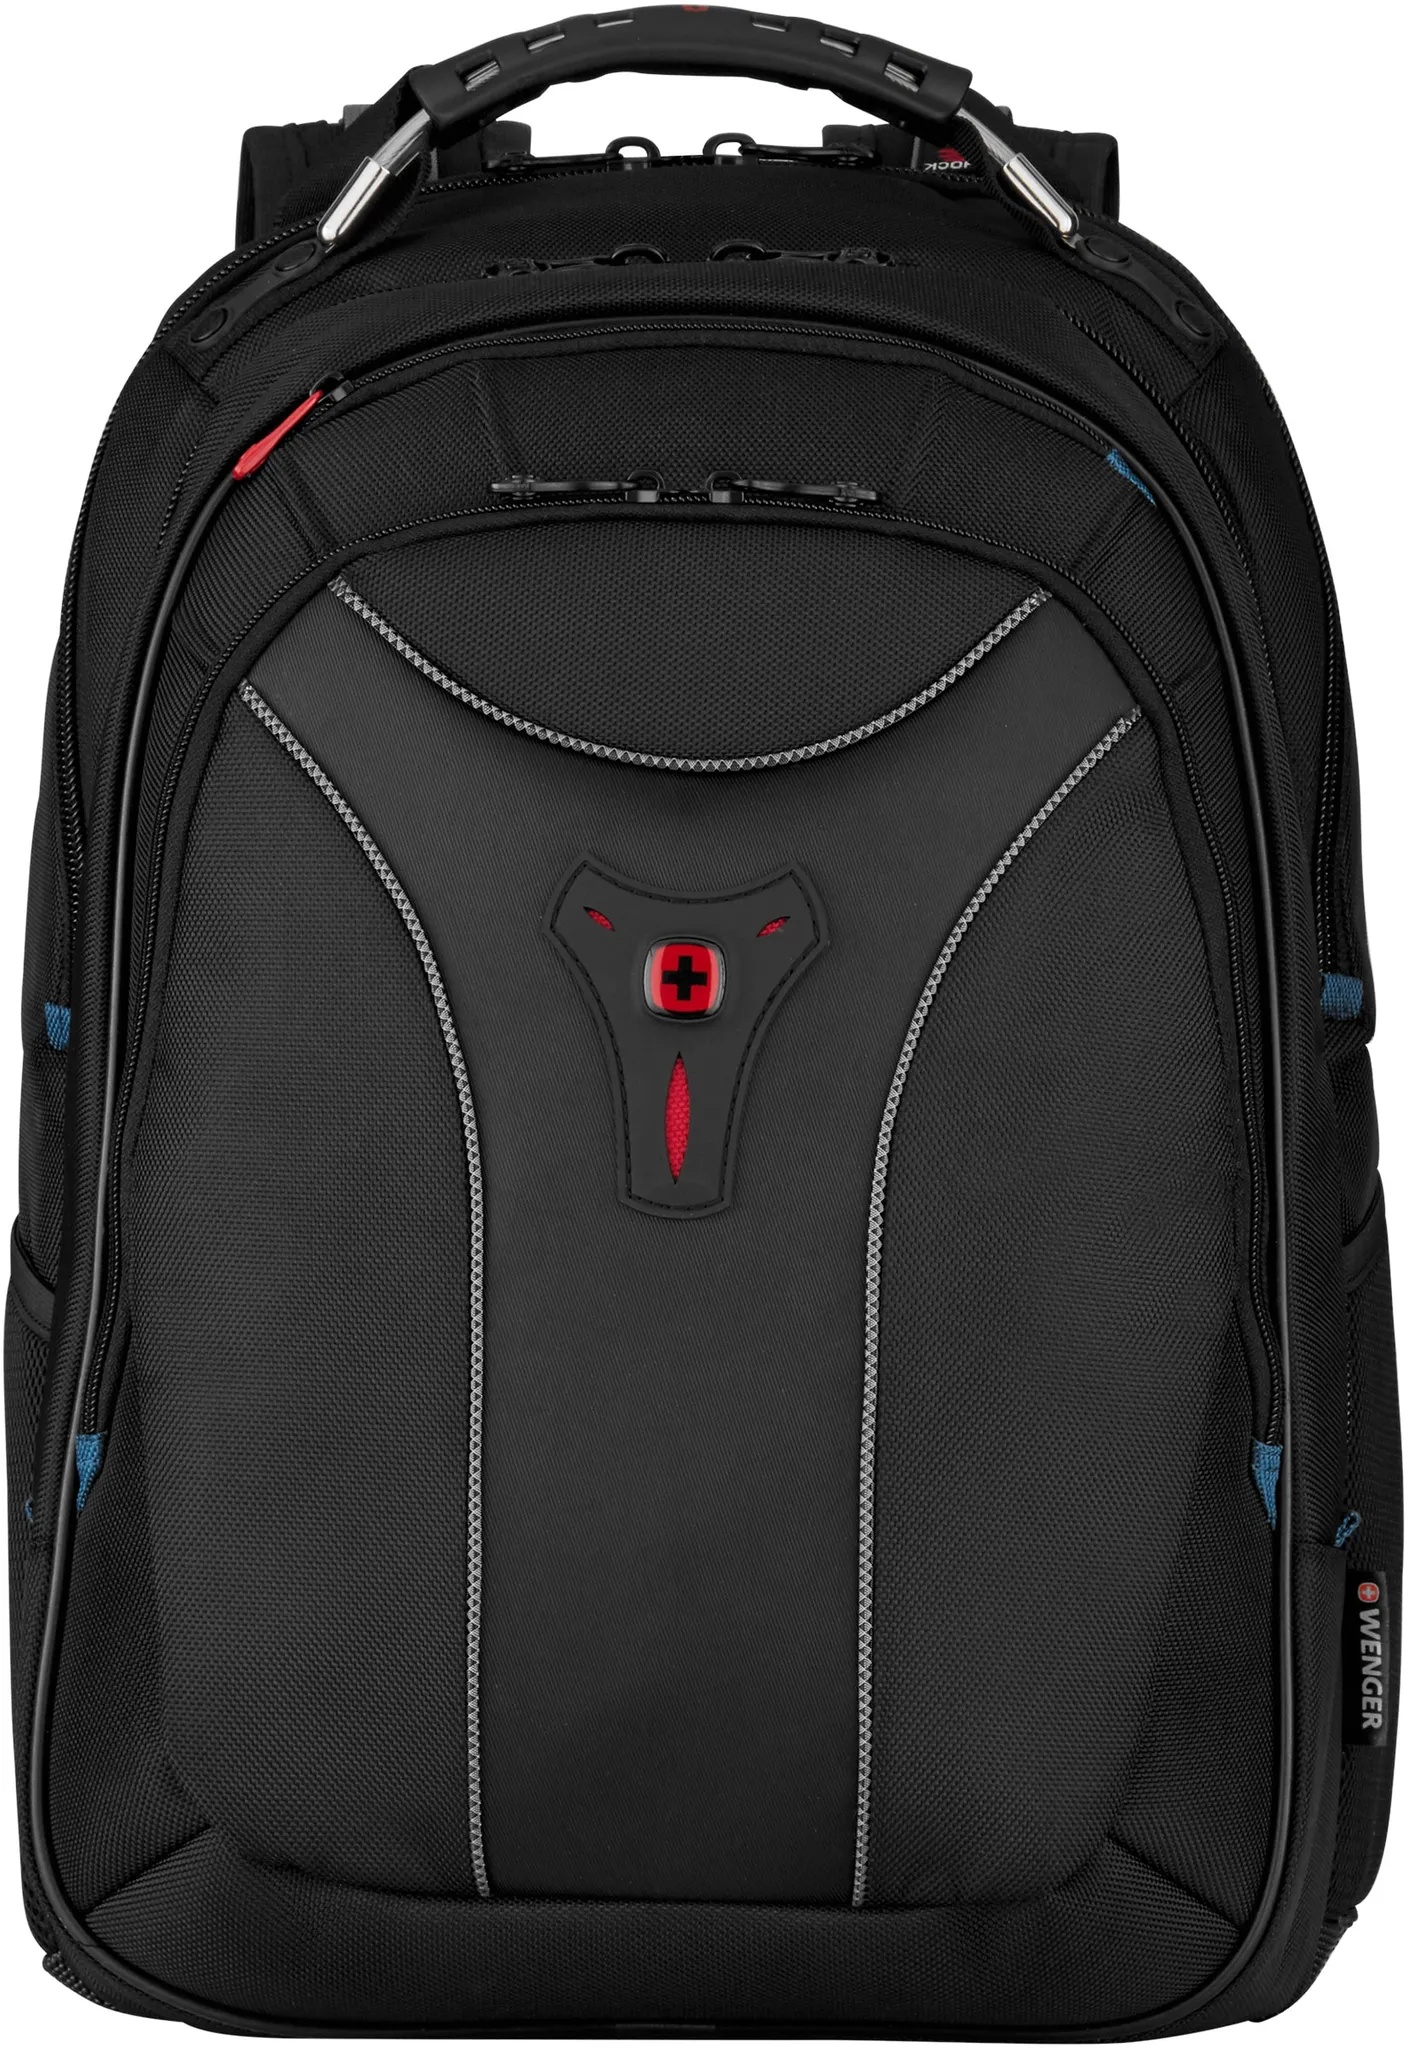 Laptoprucksack WENGER "Carbon, schwarz" Gr. B/H/T: 34 cm x 50 cm x 29 cm, schwarz Herren Rucksäcke Taschen für Laptops bis 17,3 Zoll